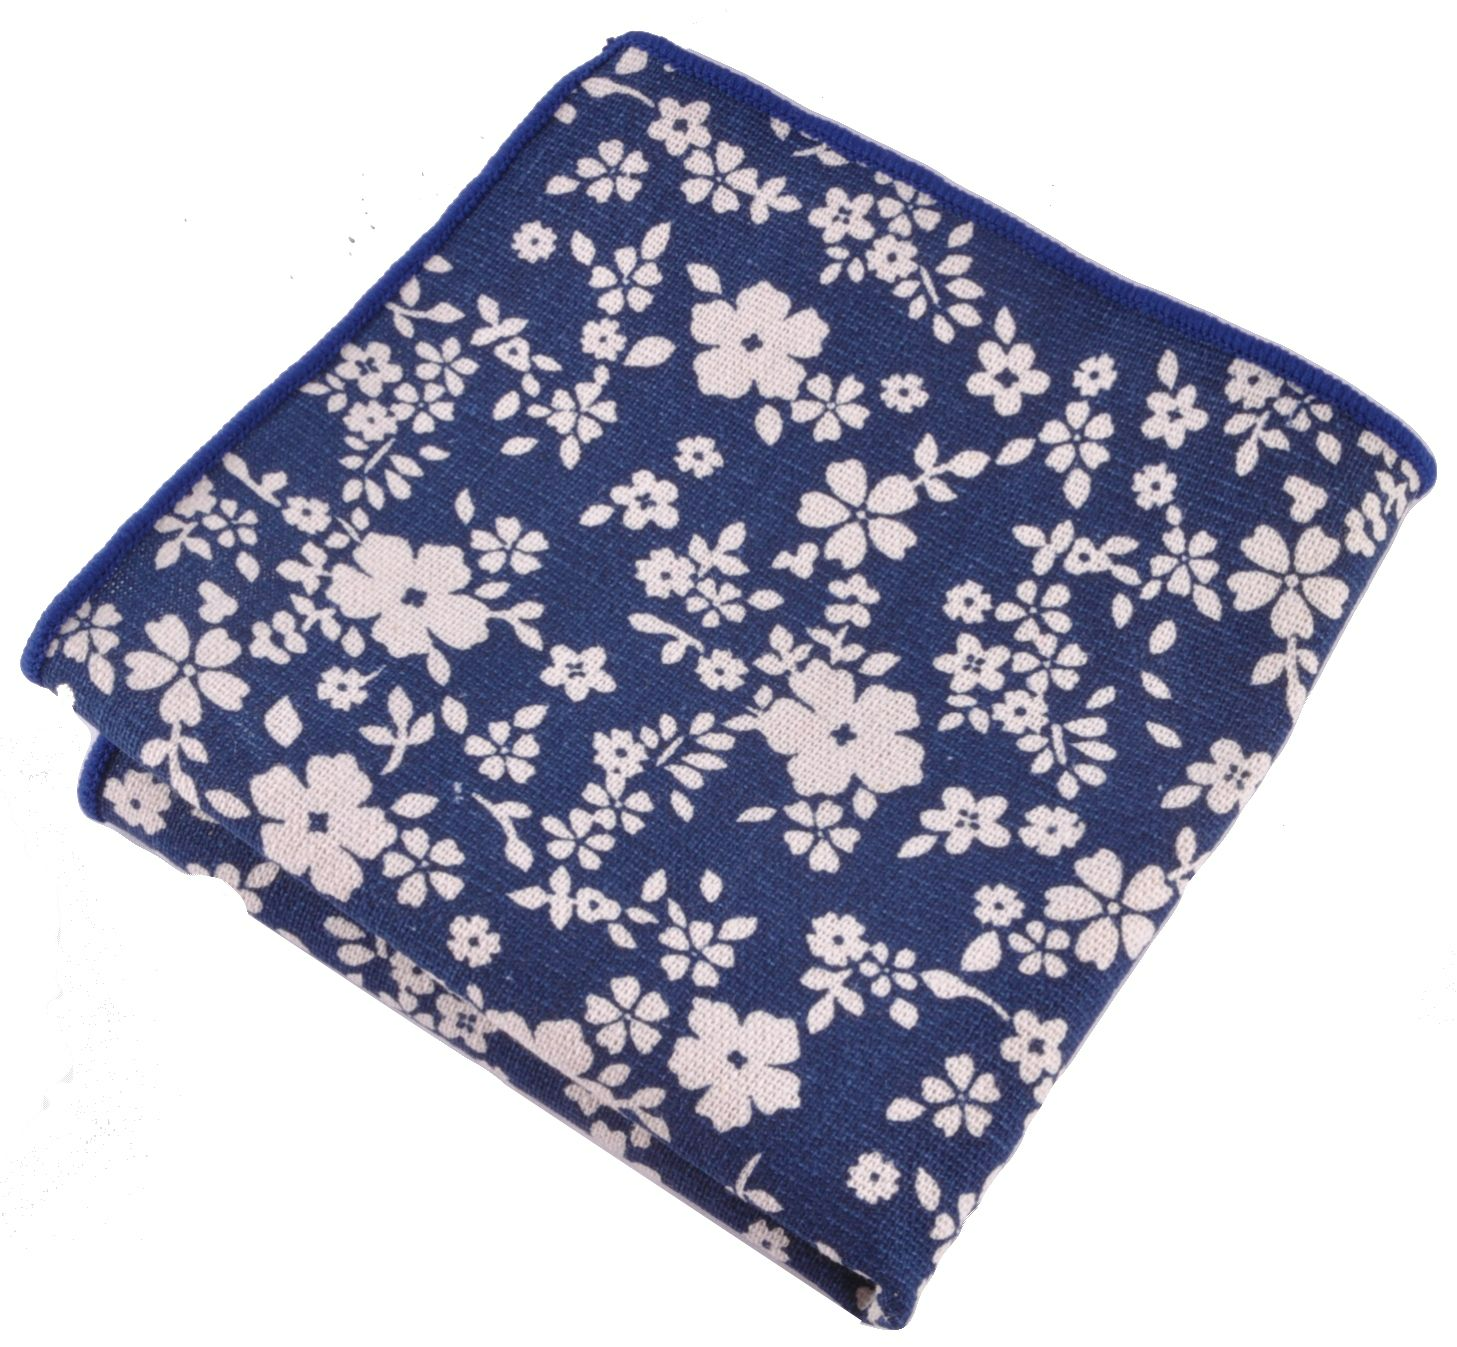 Нагрудный платок синий с цветами описание: Материал - Хлопок, Размеры - 24 см х 24 см, Страна производства - Турция;